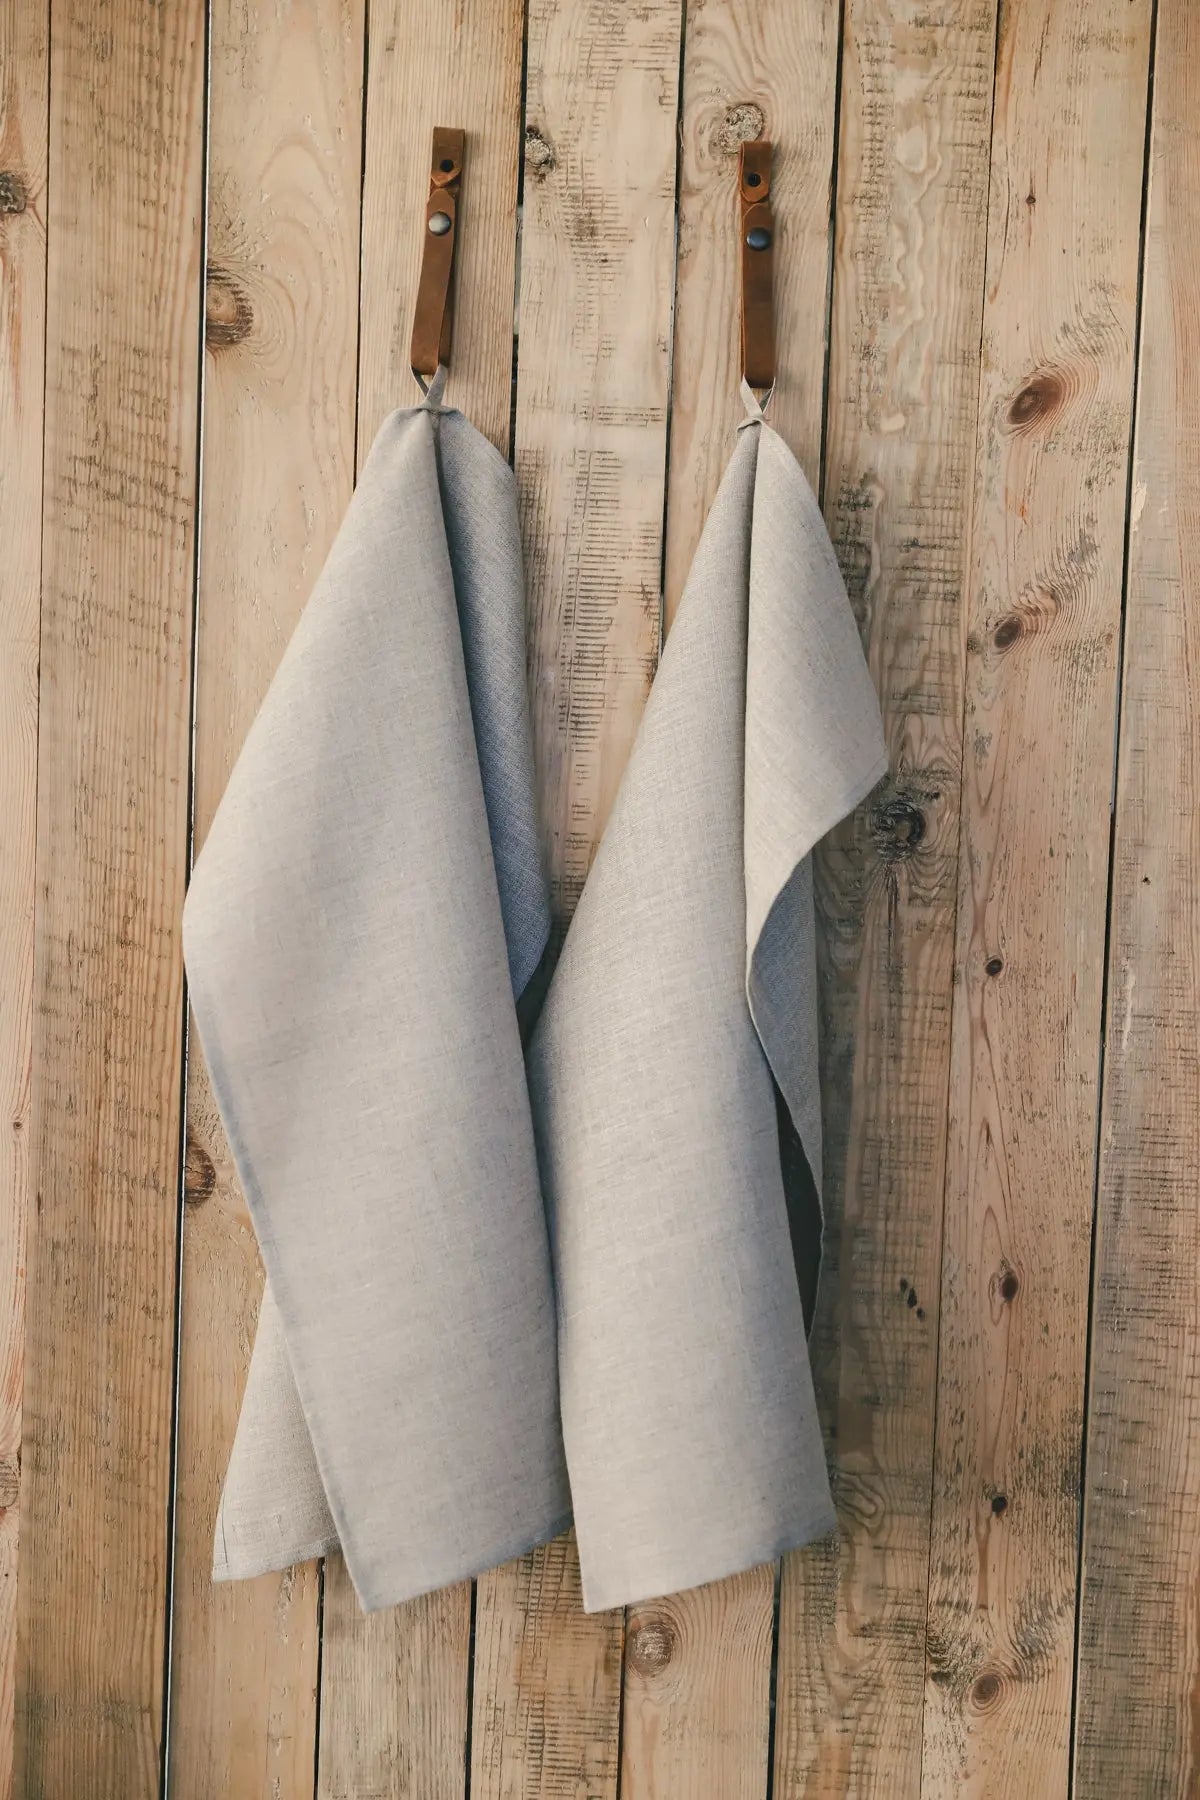 Pure Linen Kitchen Tea Towels - Epic Linen luxury linen